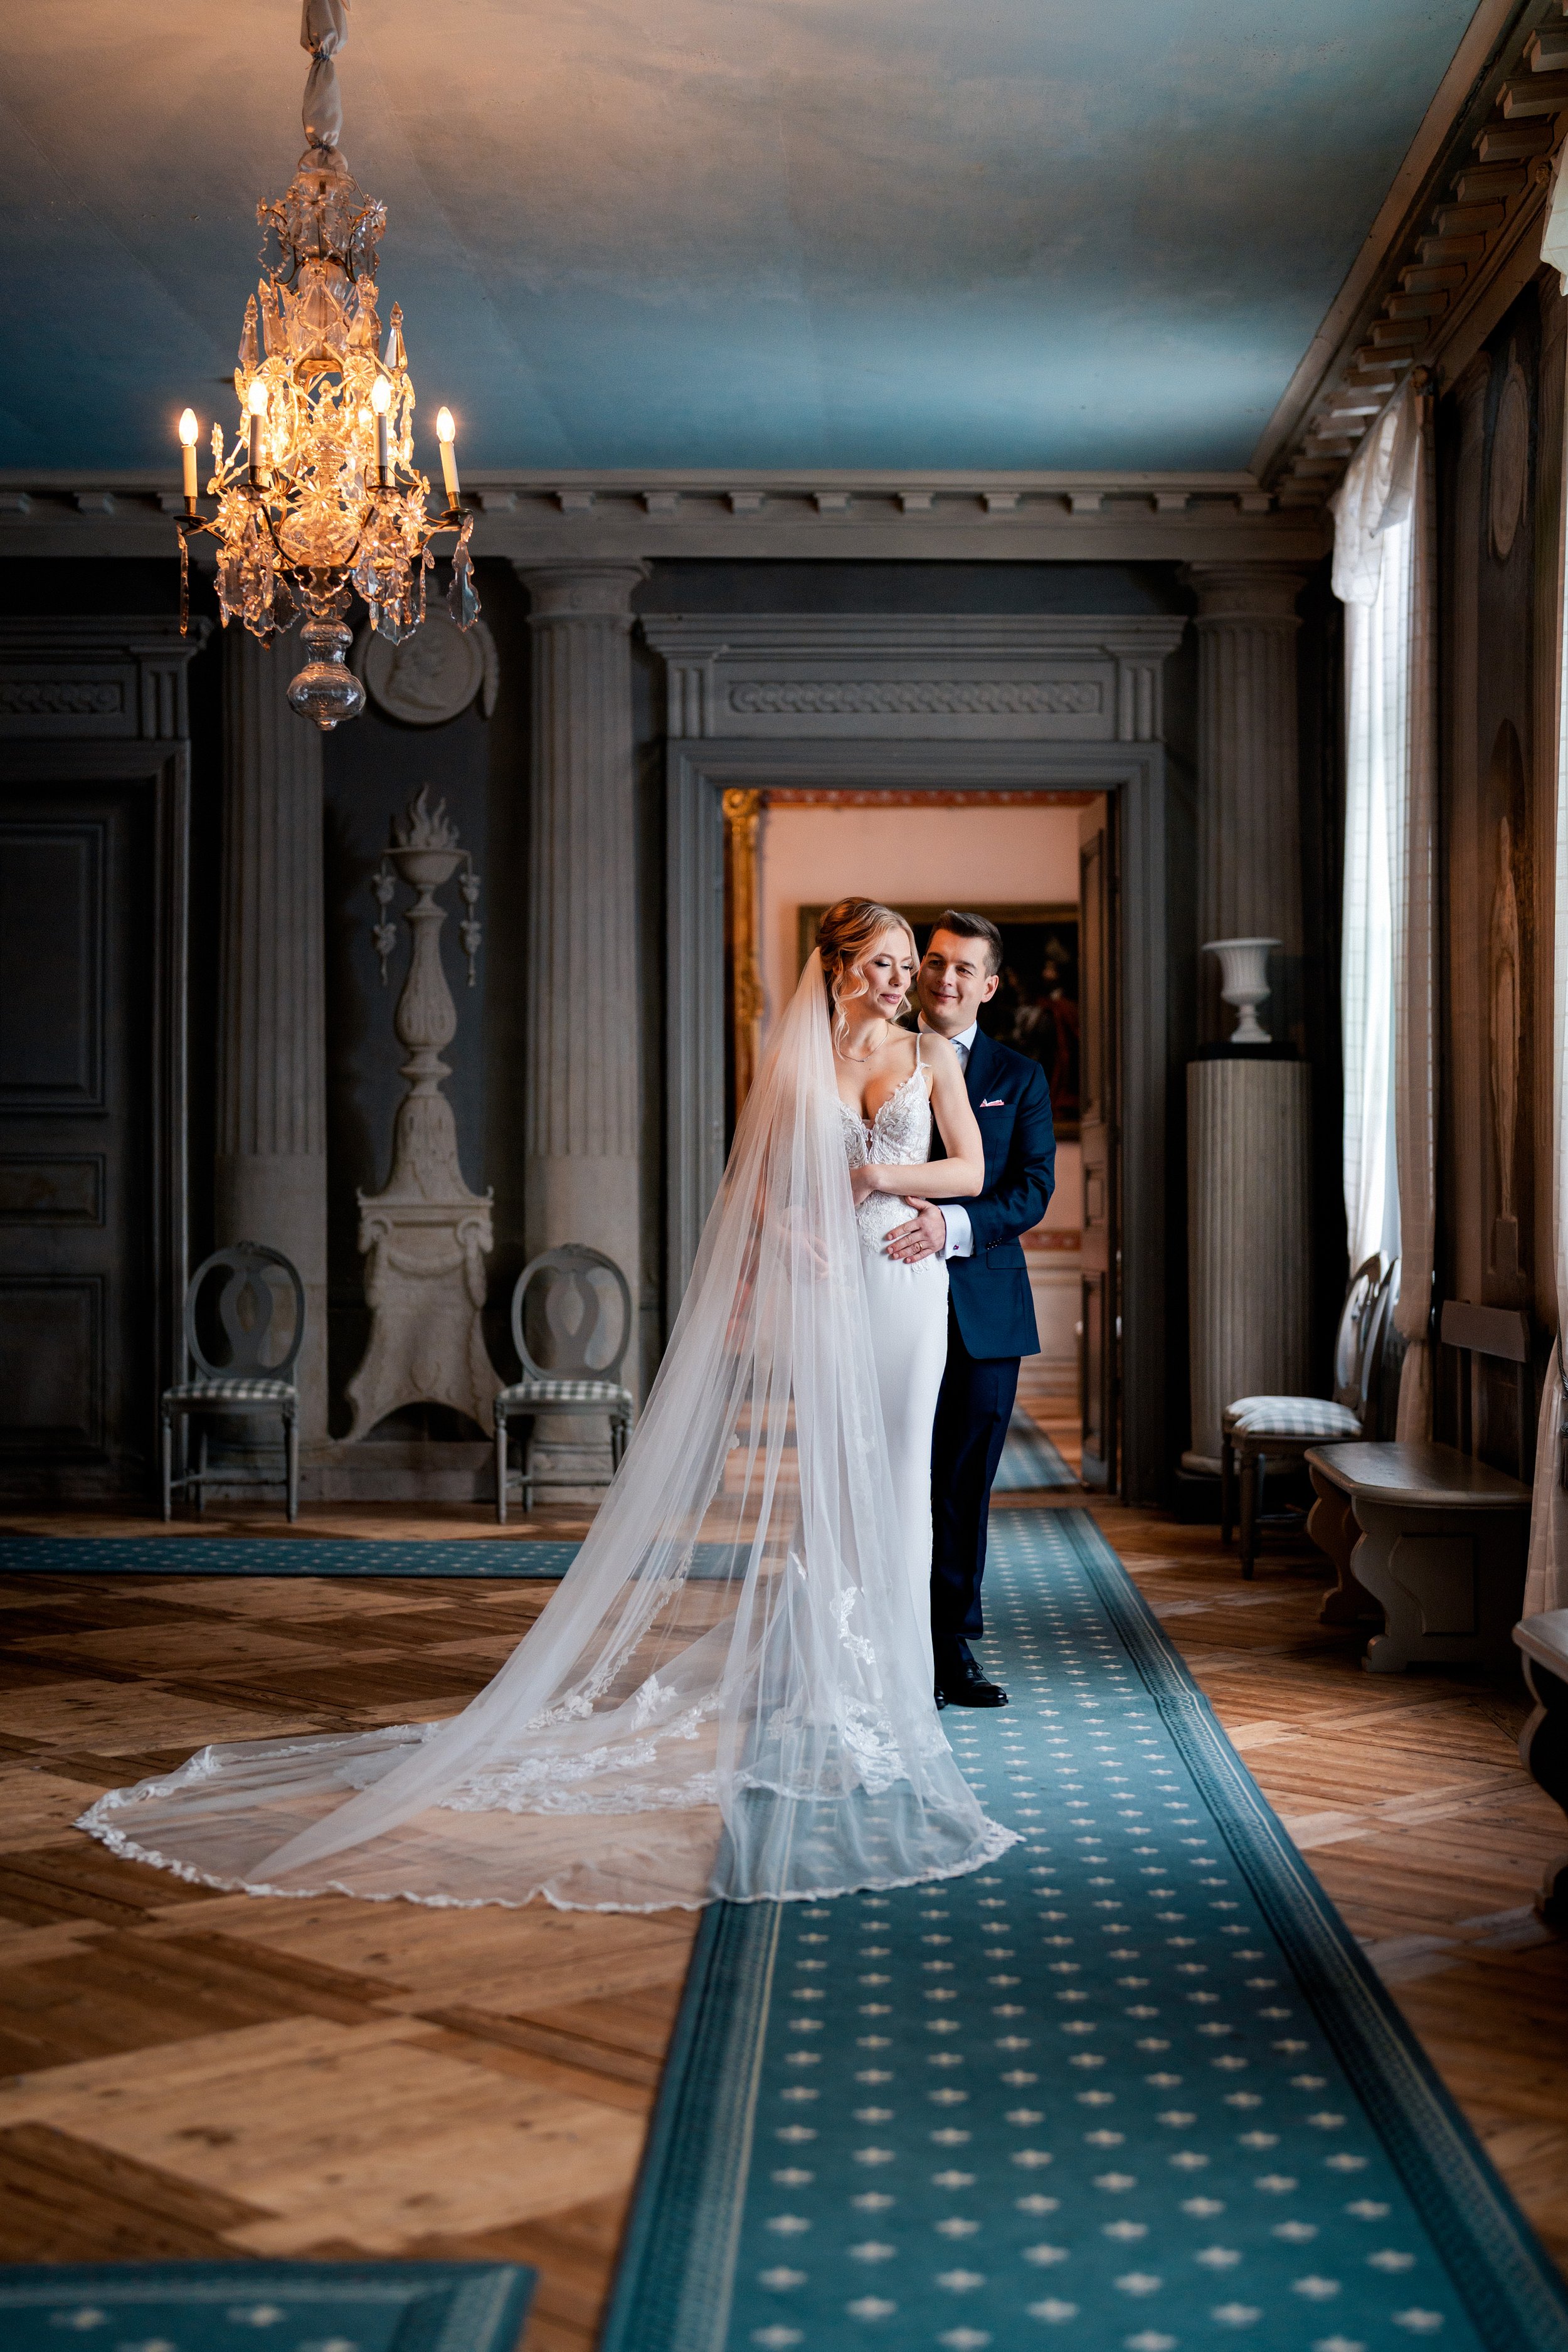 Hääkuvaus | Wedding photography | Sami Turunen